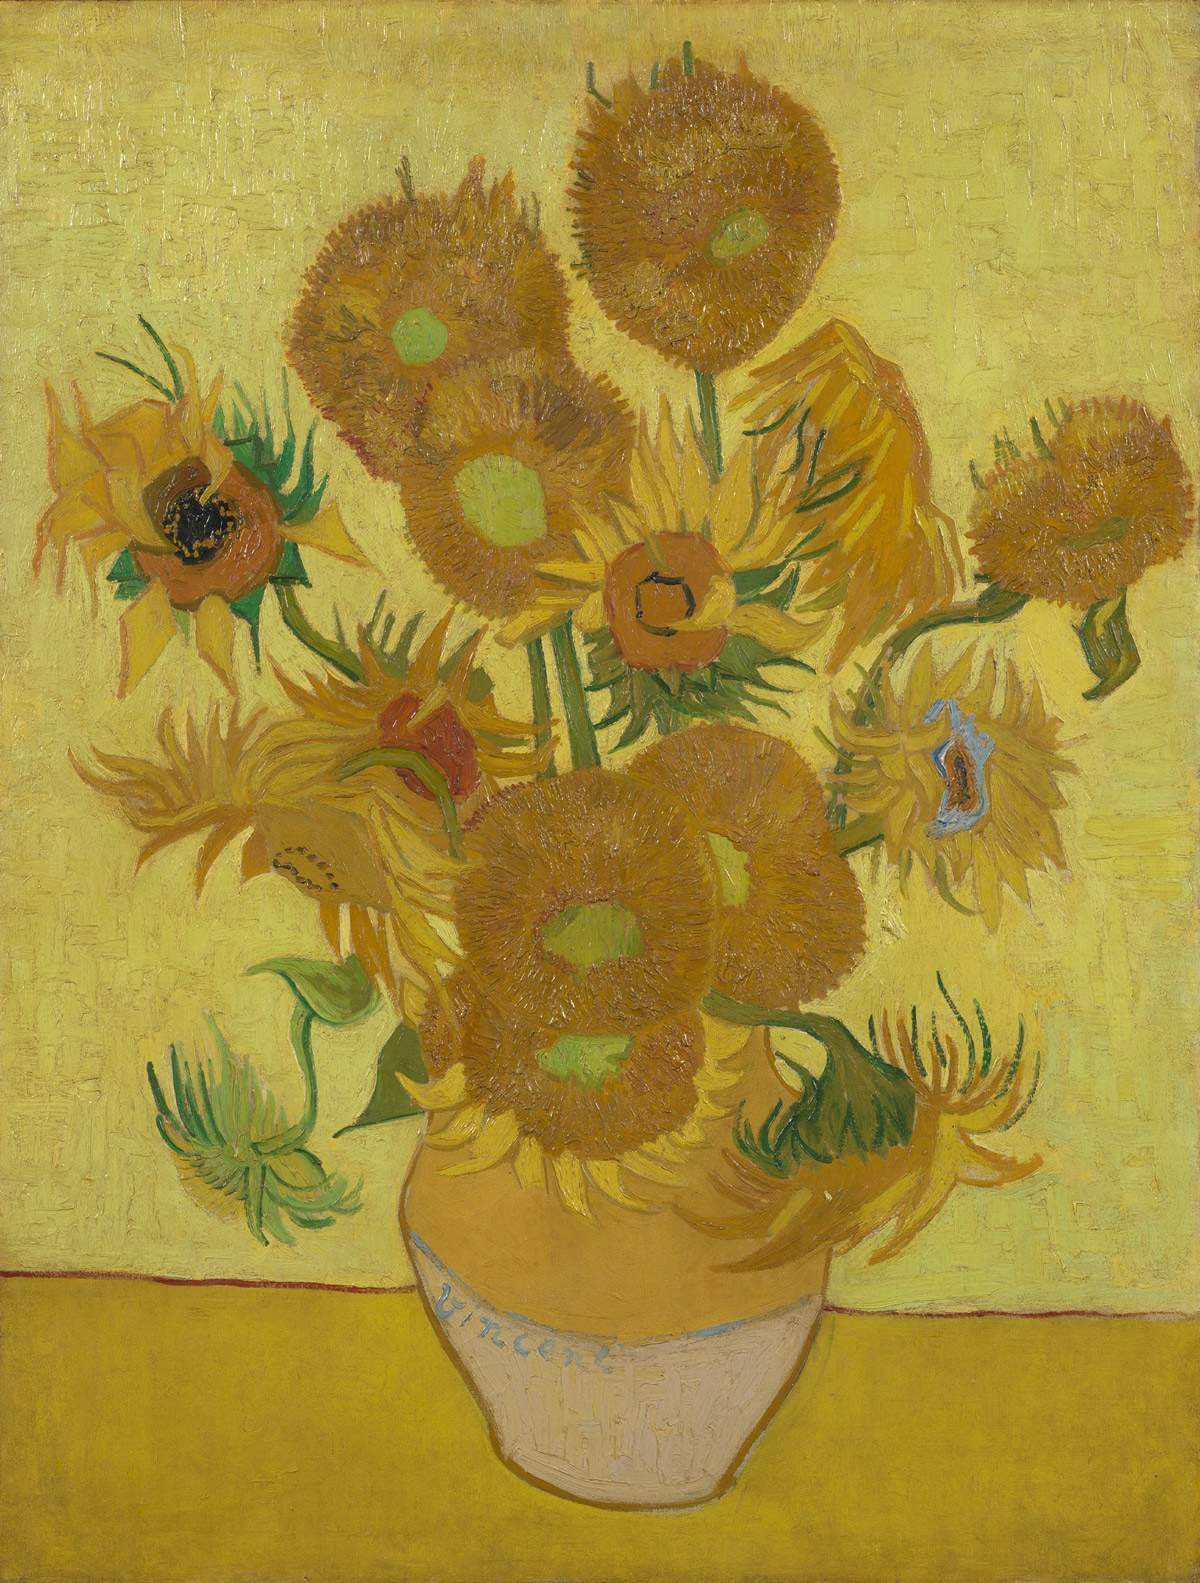 Nuovi studi sui Girasoli di van Gogh (e c'è anche un po' di Italia): sono un'opera fragilissima